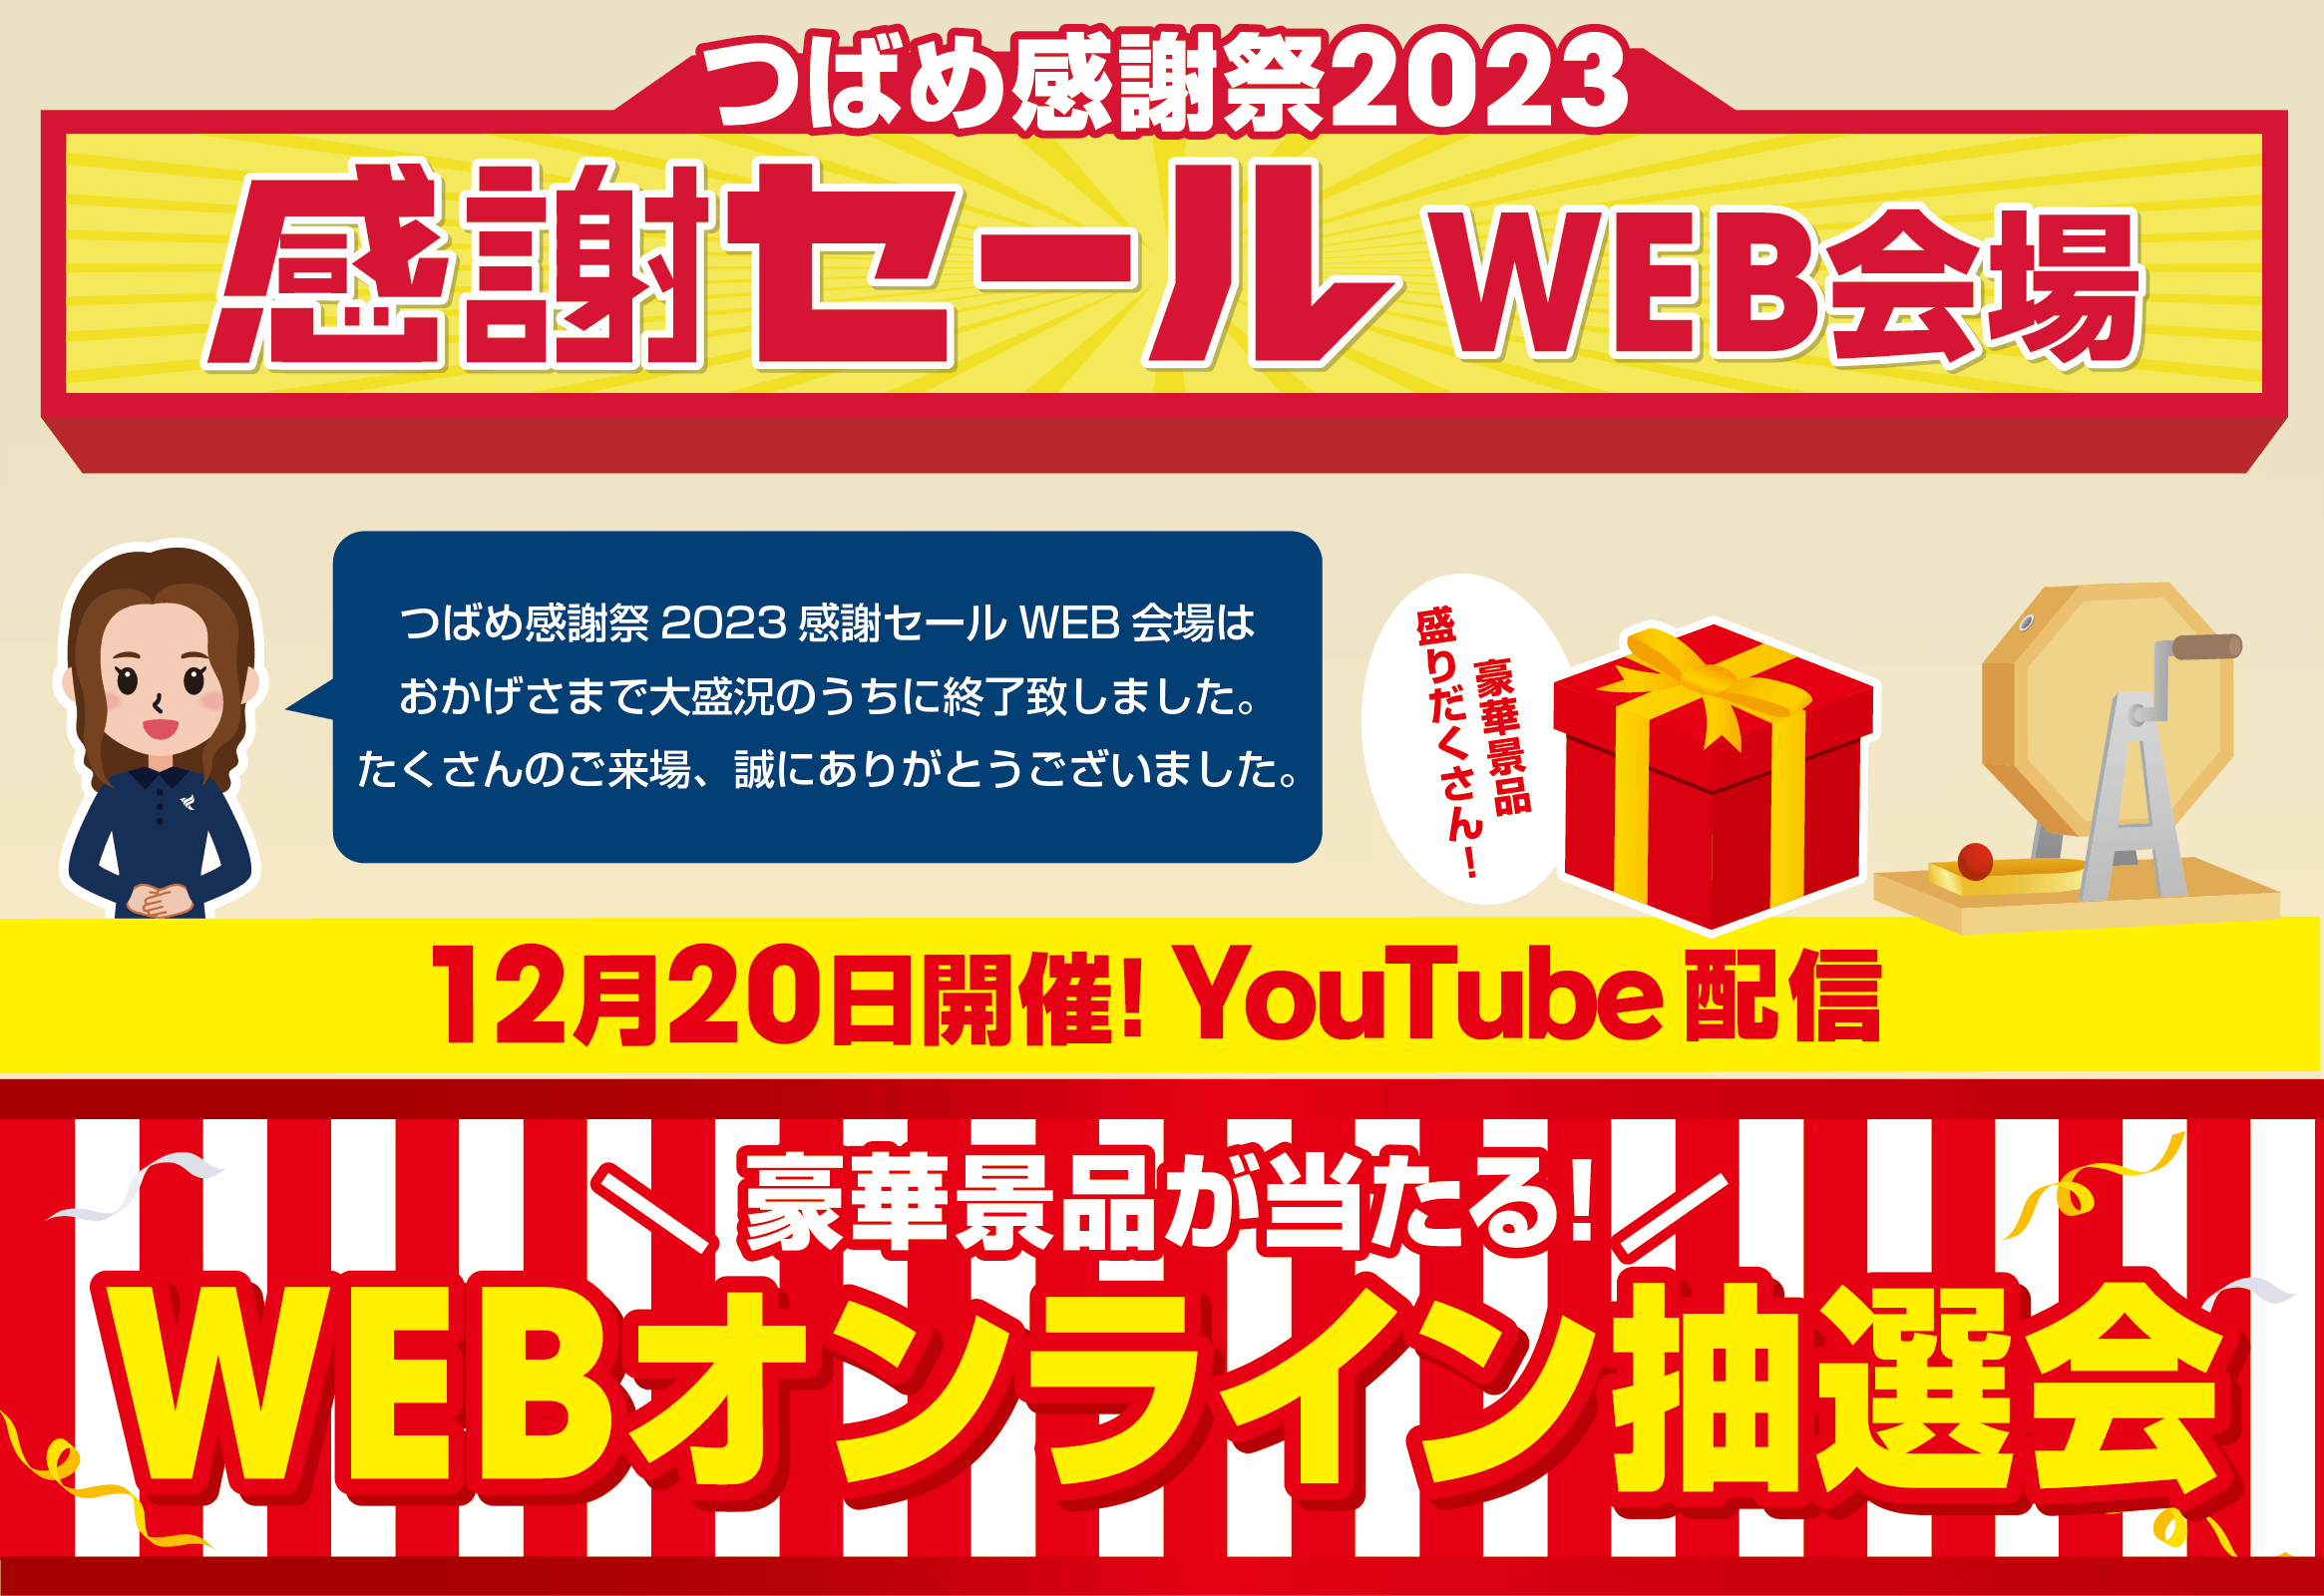 つばめ感謝祭2023 WEBオンライン抽選会